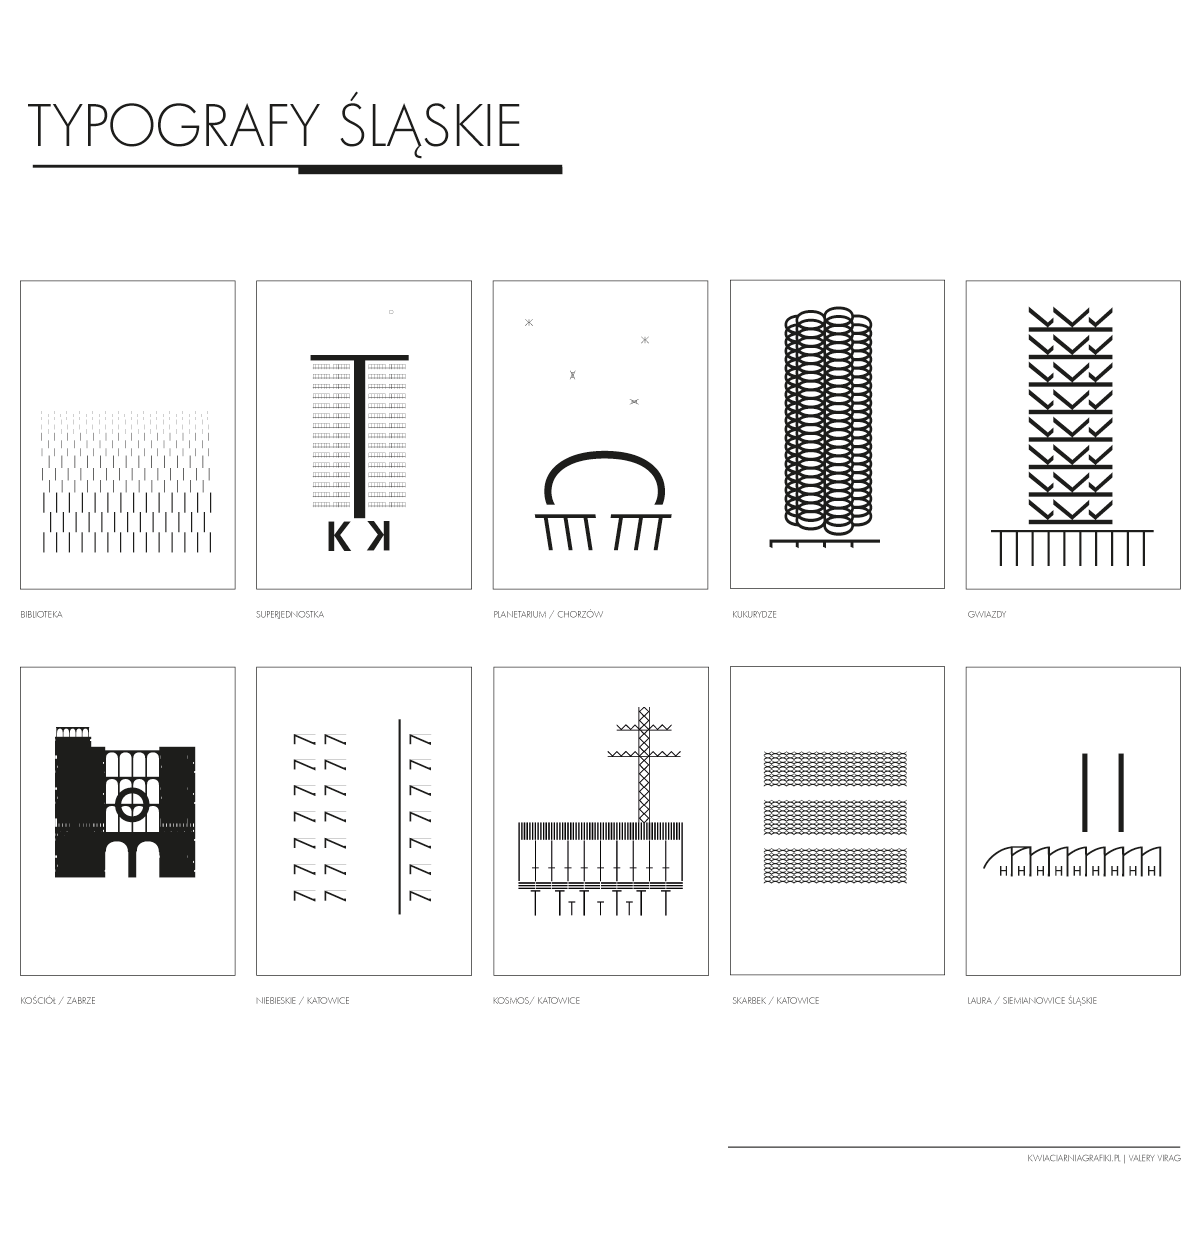 typografy-slaskie-komplet-1